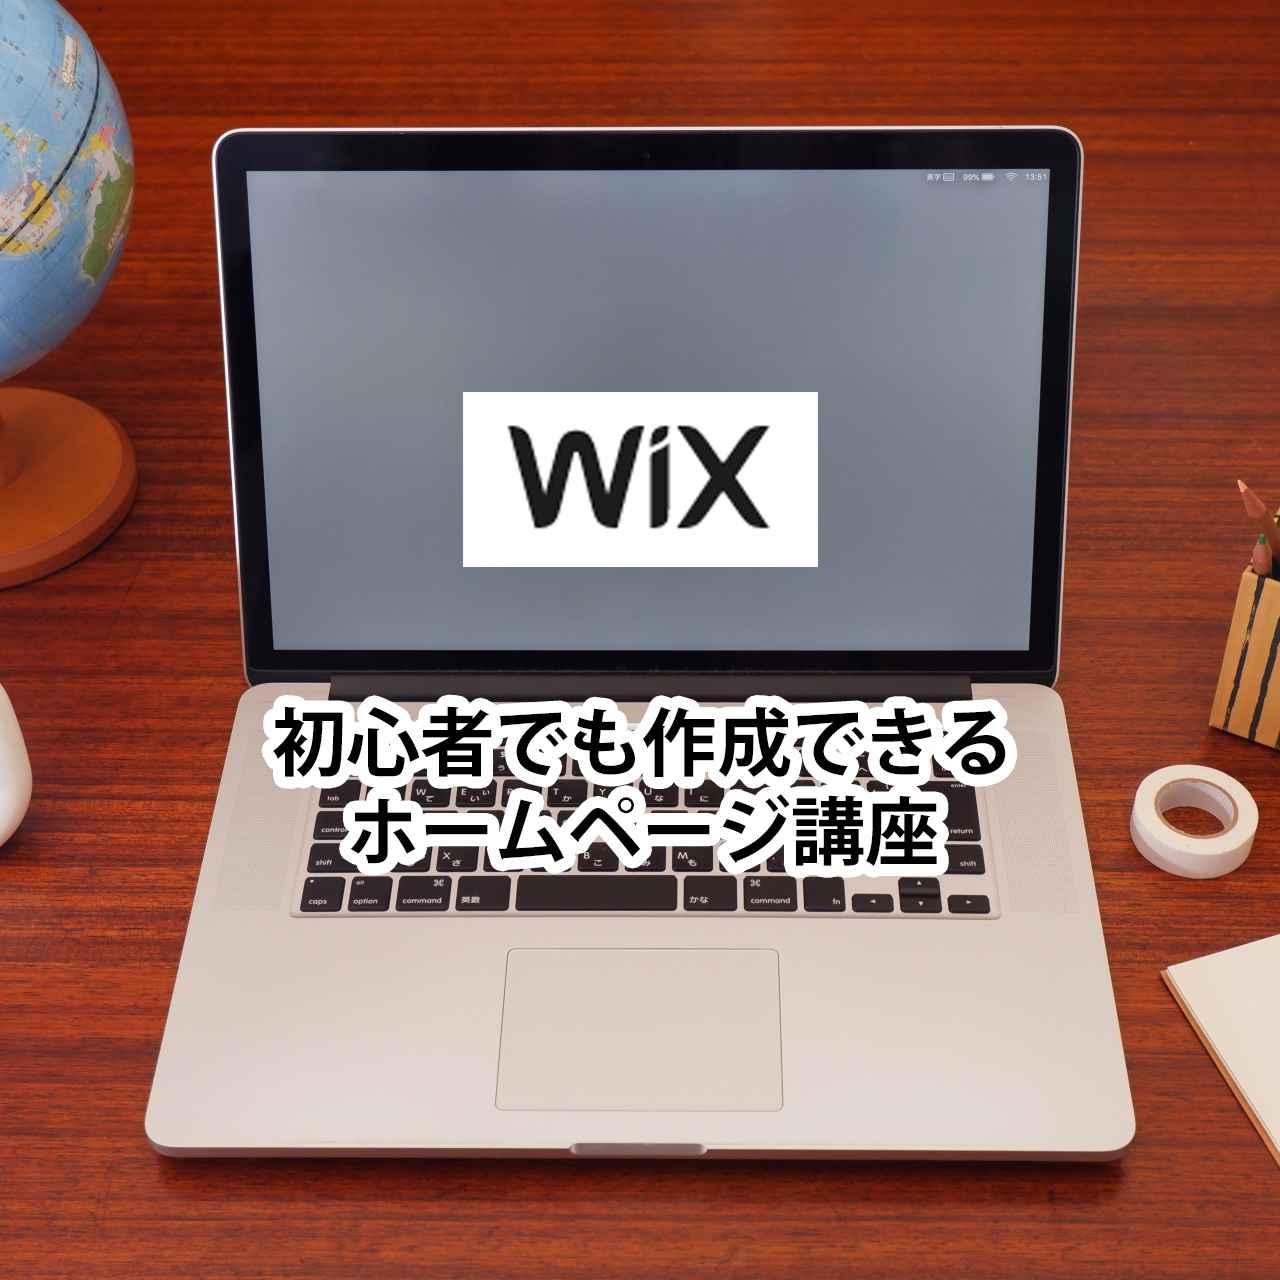 初心者でも作成できるWixホームページ講座